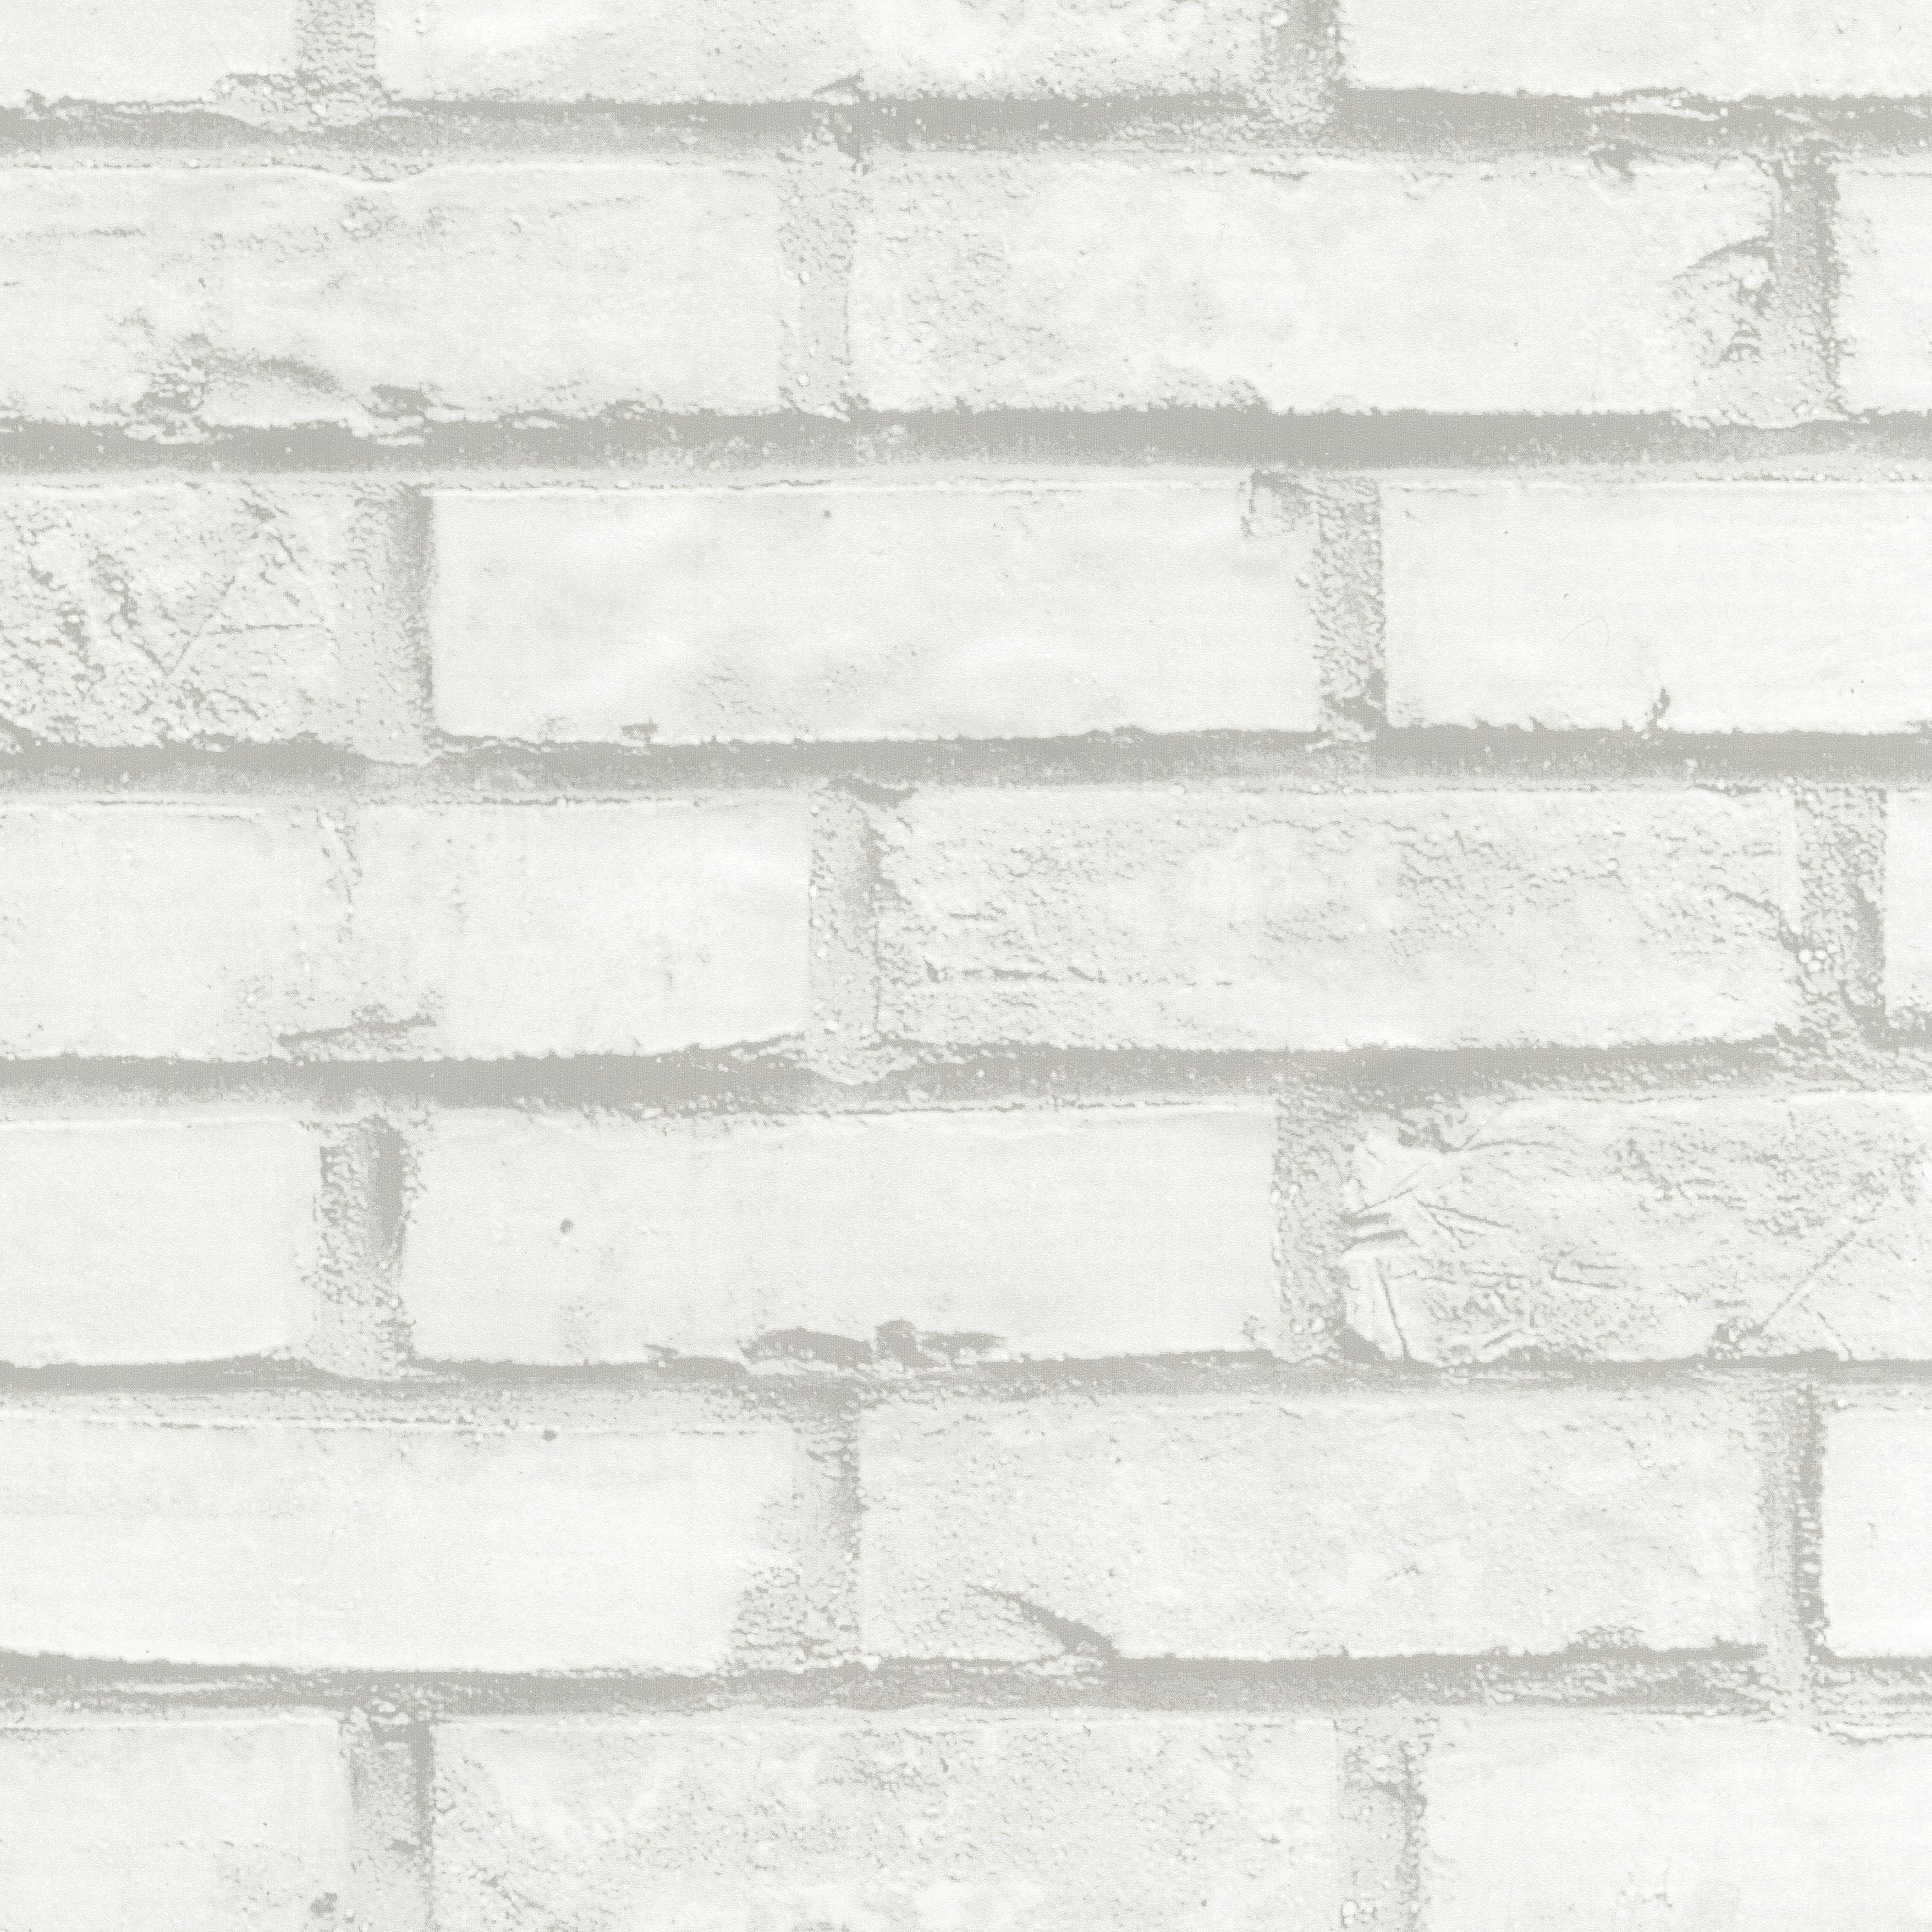 Klebefolie Mauer Steine Möbelfolie selbstklebend Dekorfolie Steinoptik 90x200cm 